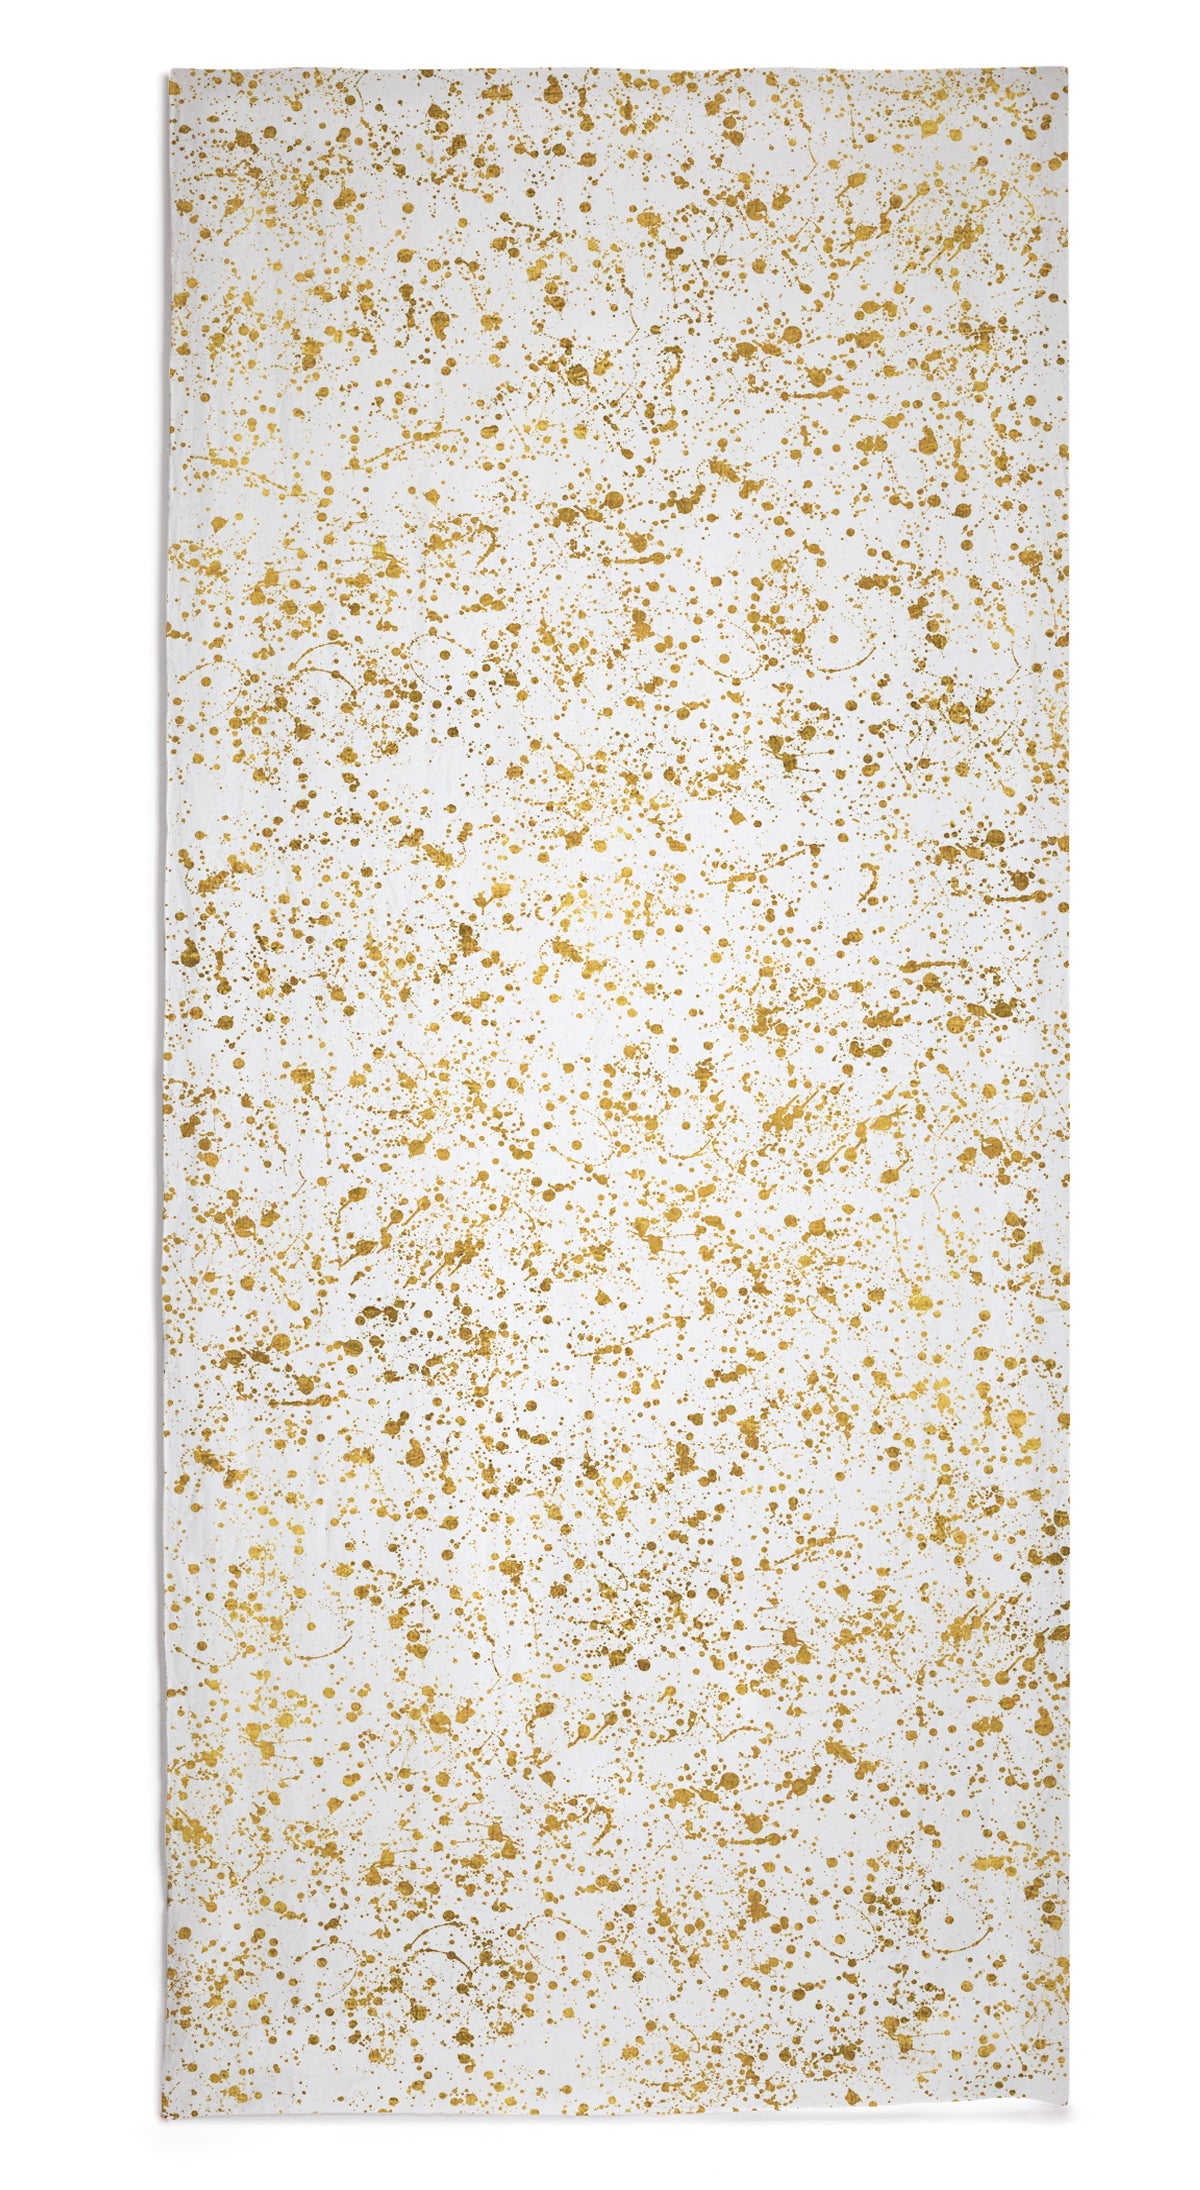 Splatter Linen Tablecloth in White & Gold